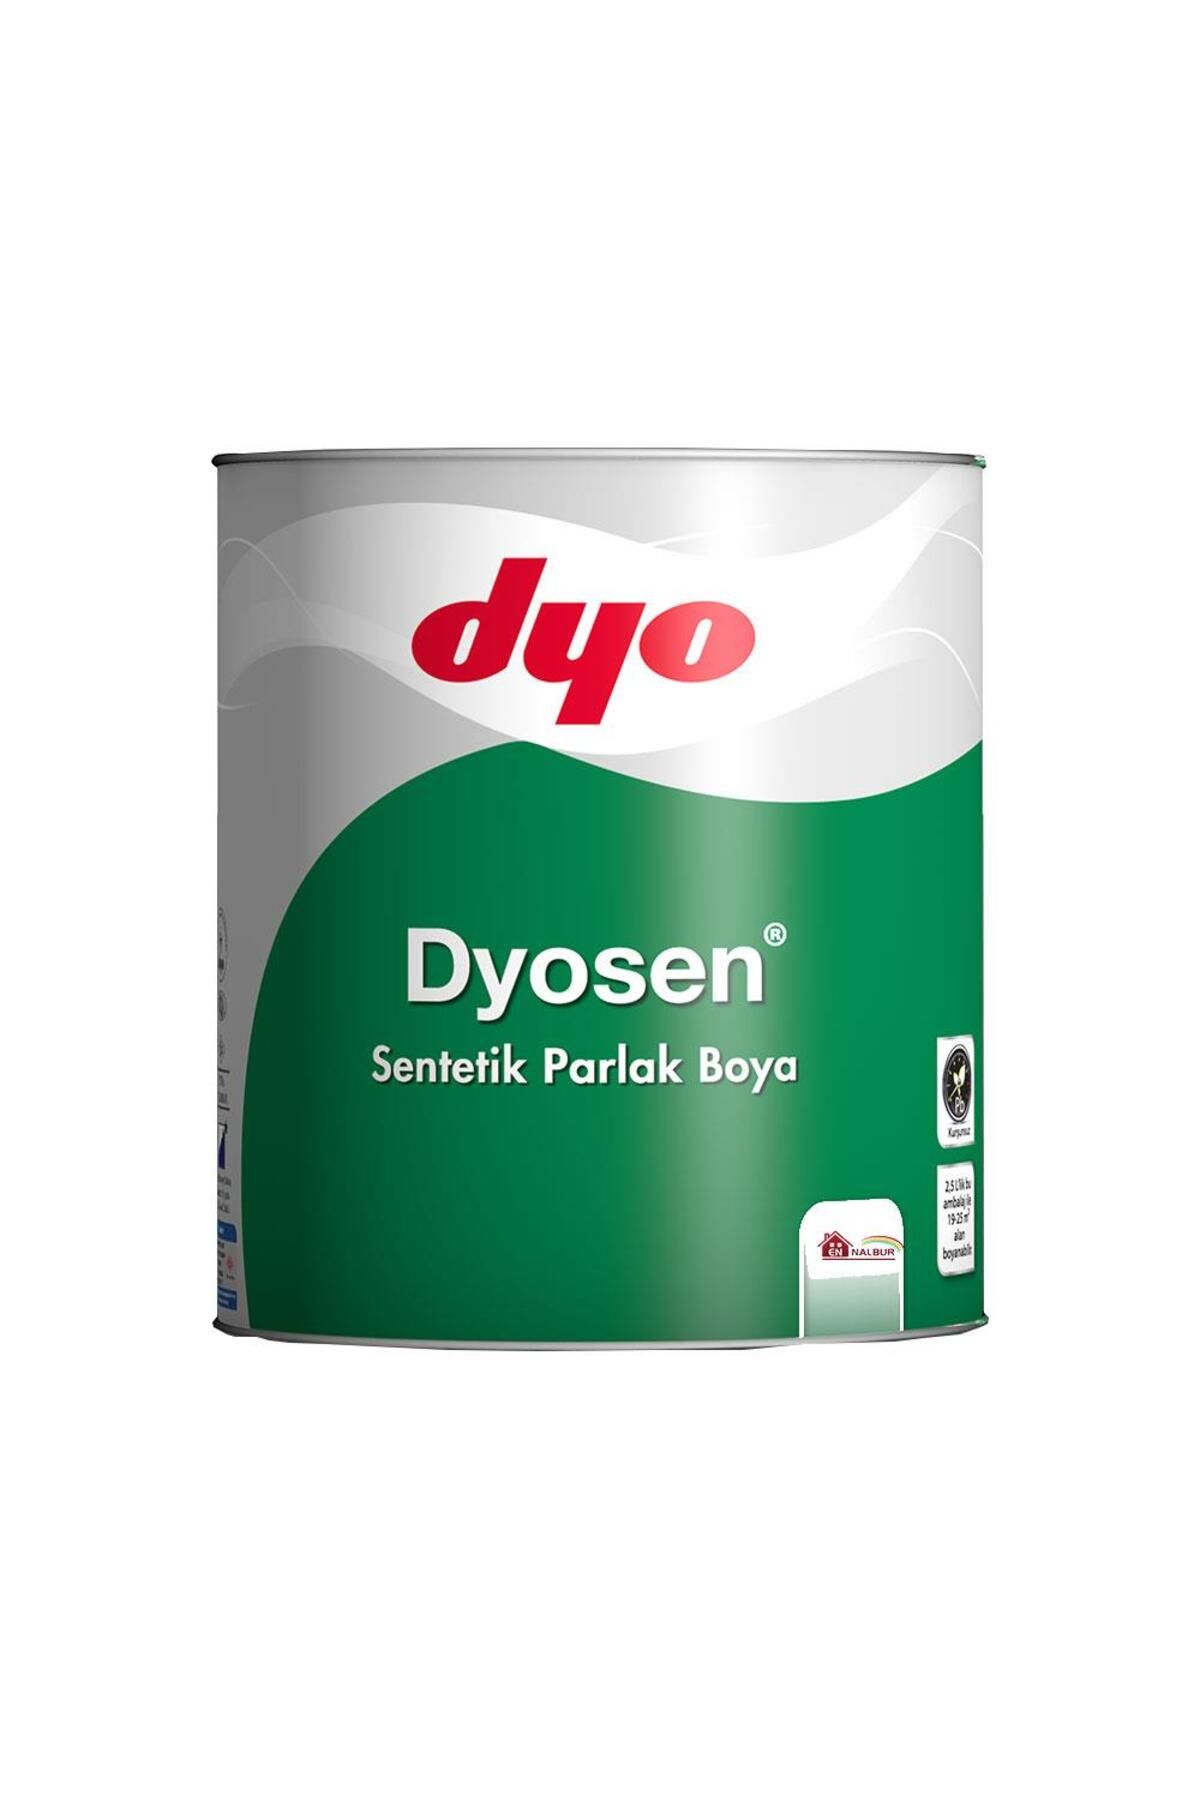 Dyo Dyosen Sentetik Parlak Boya 0,75 LT Koyu Kahve